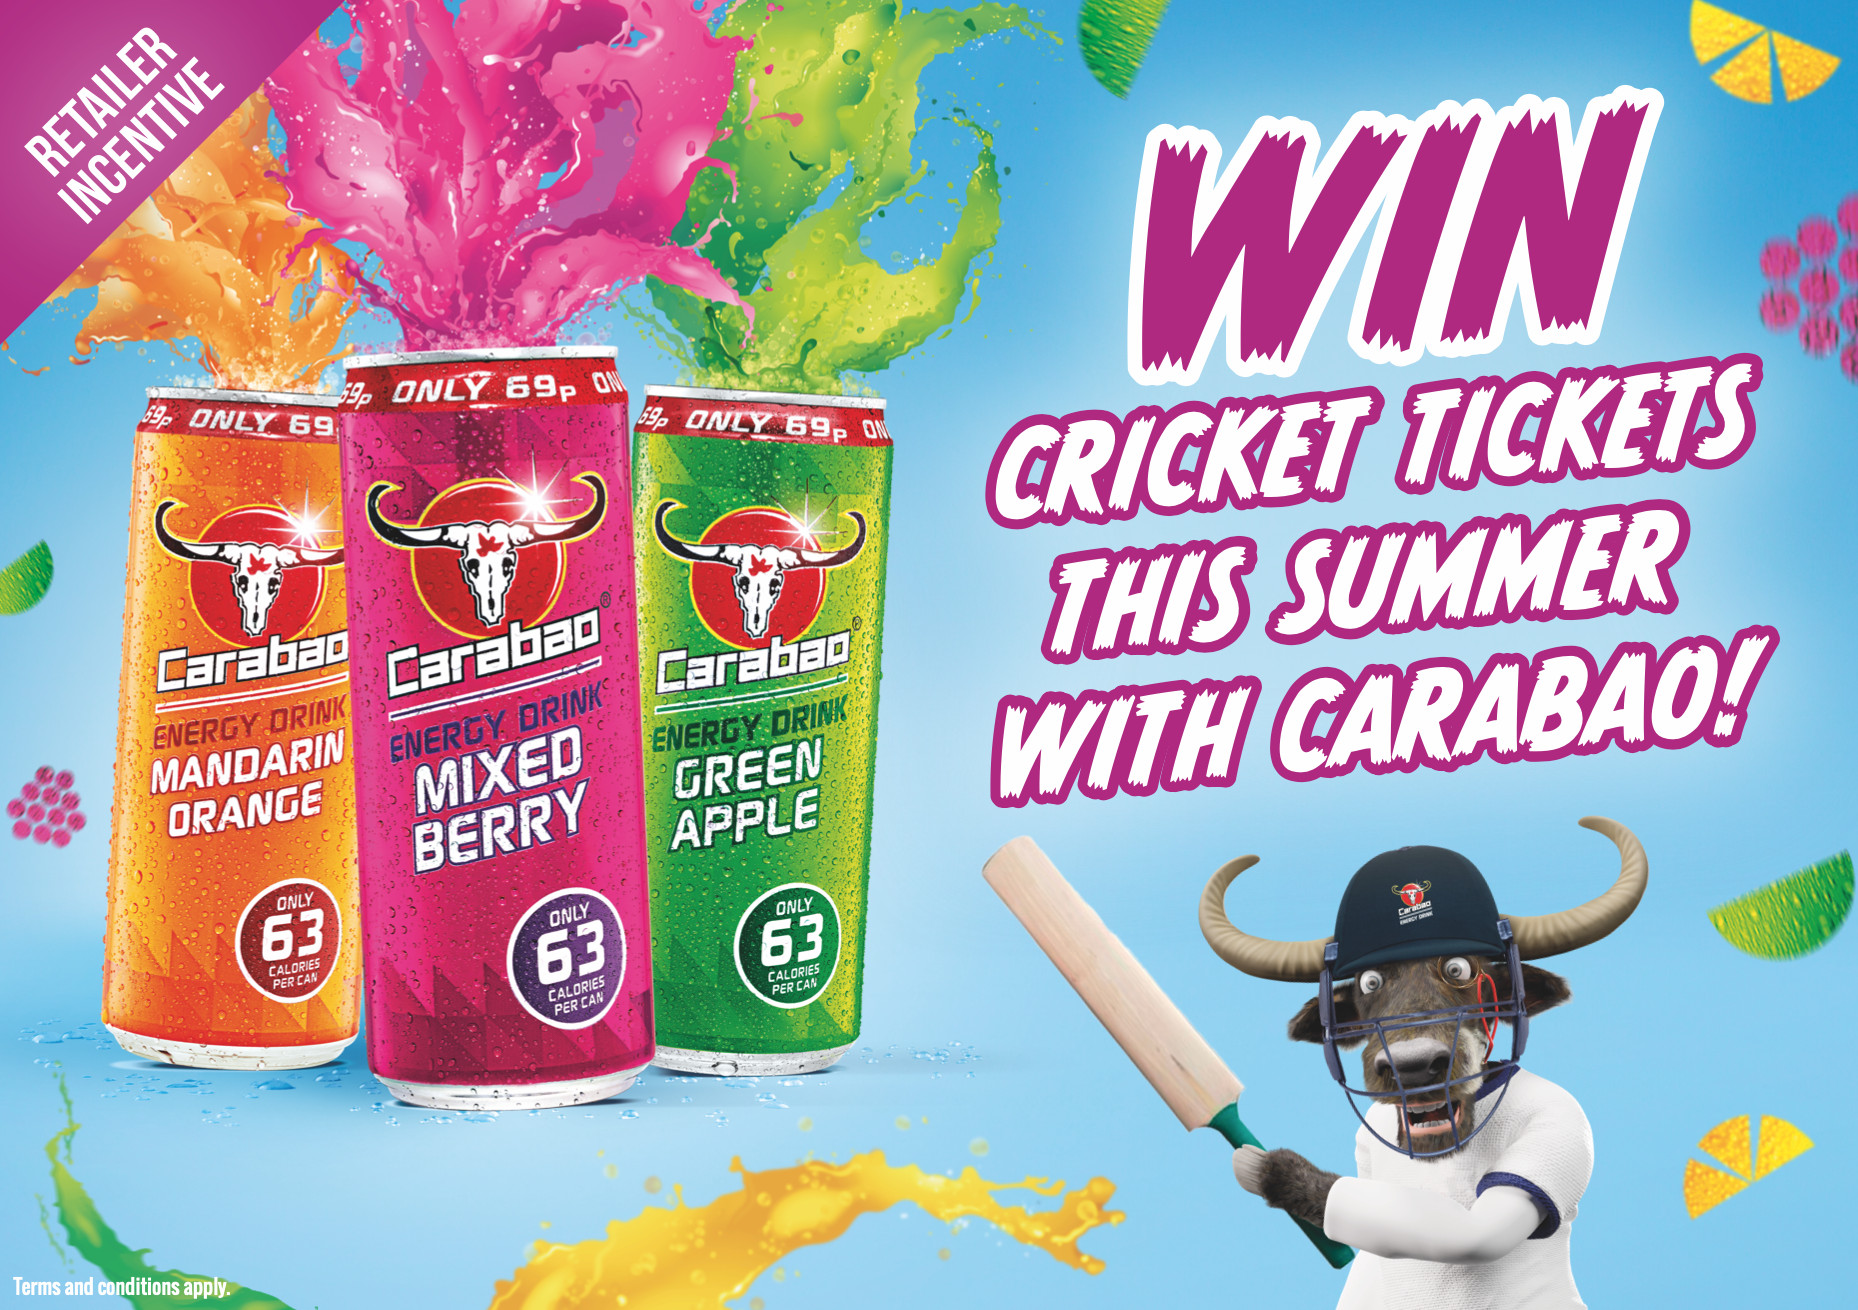 Carabao launches retailer ticket promo for 2021 England cricket